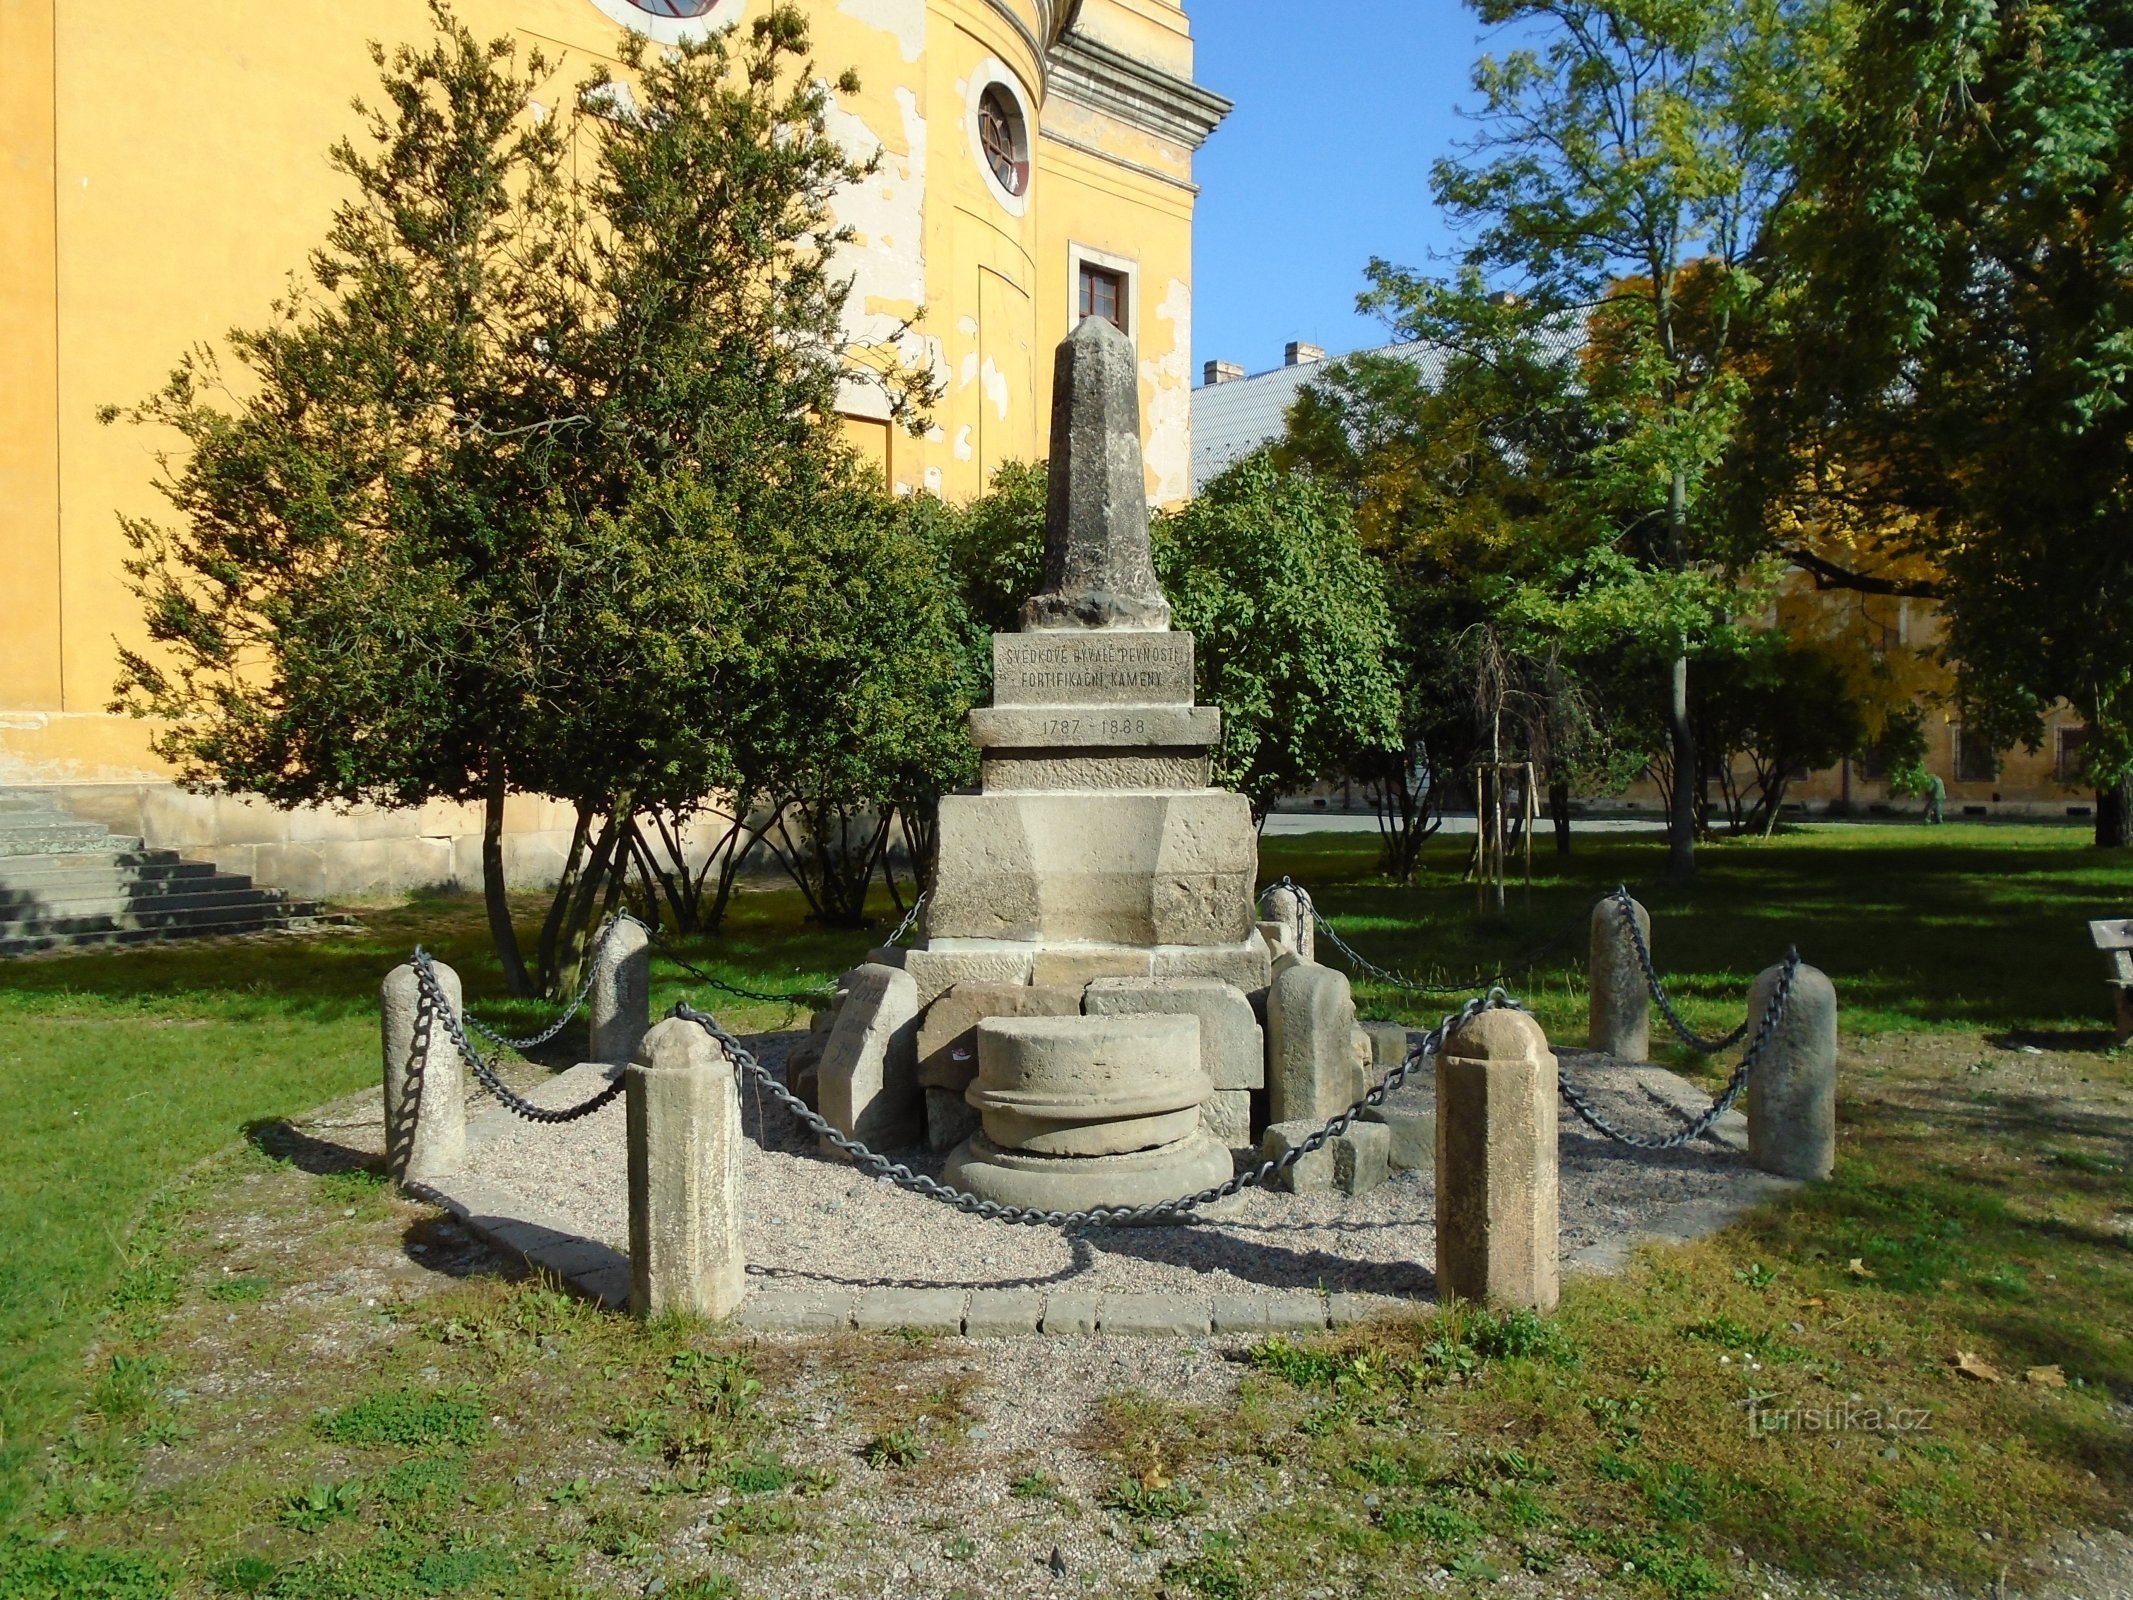 Monumento a la fortificación (Josefov, 28.9.2017/XNUMX/XNUMX)